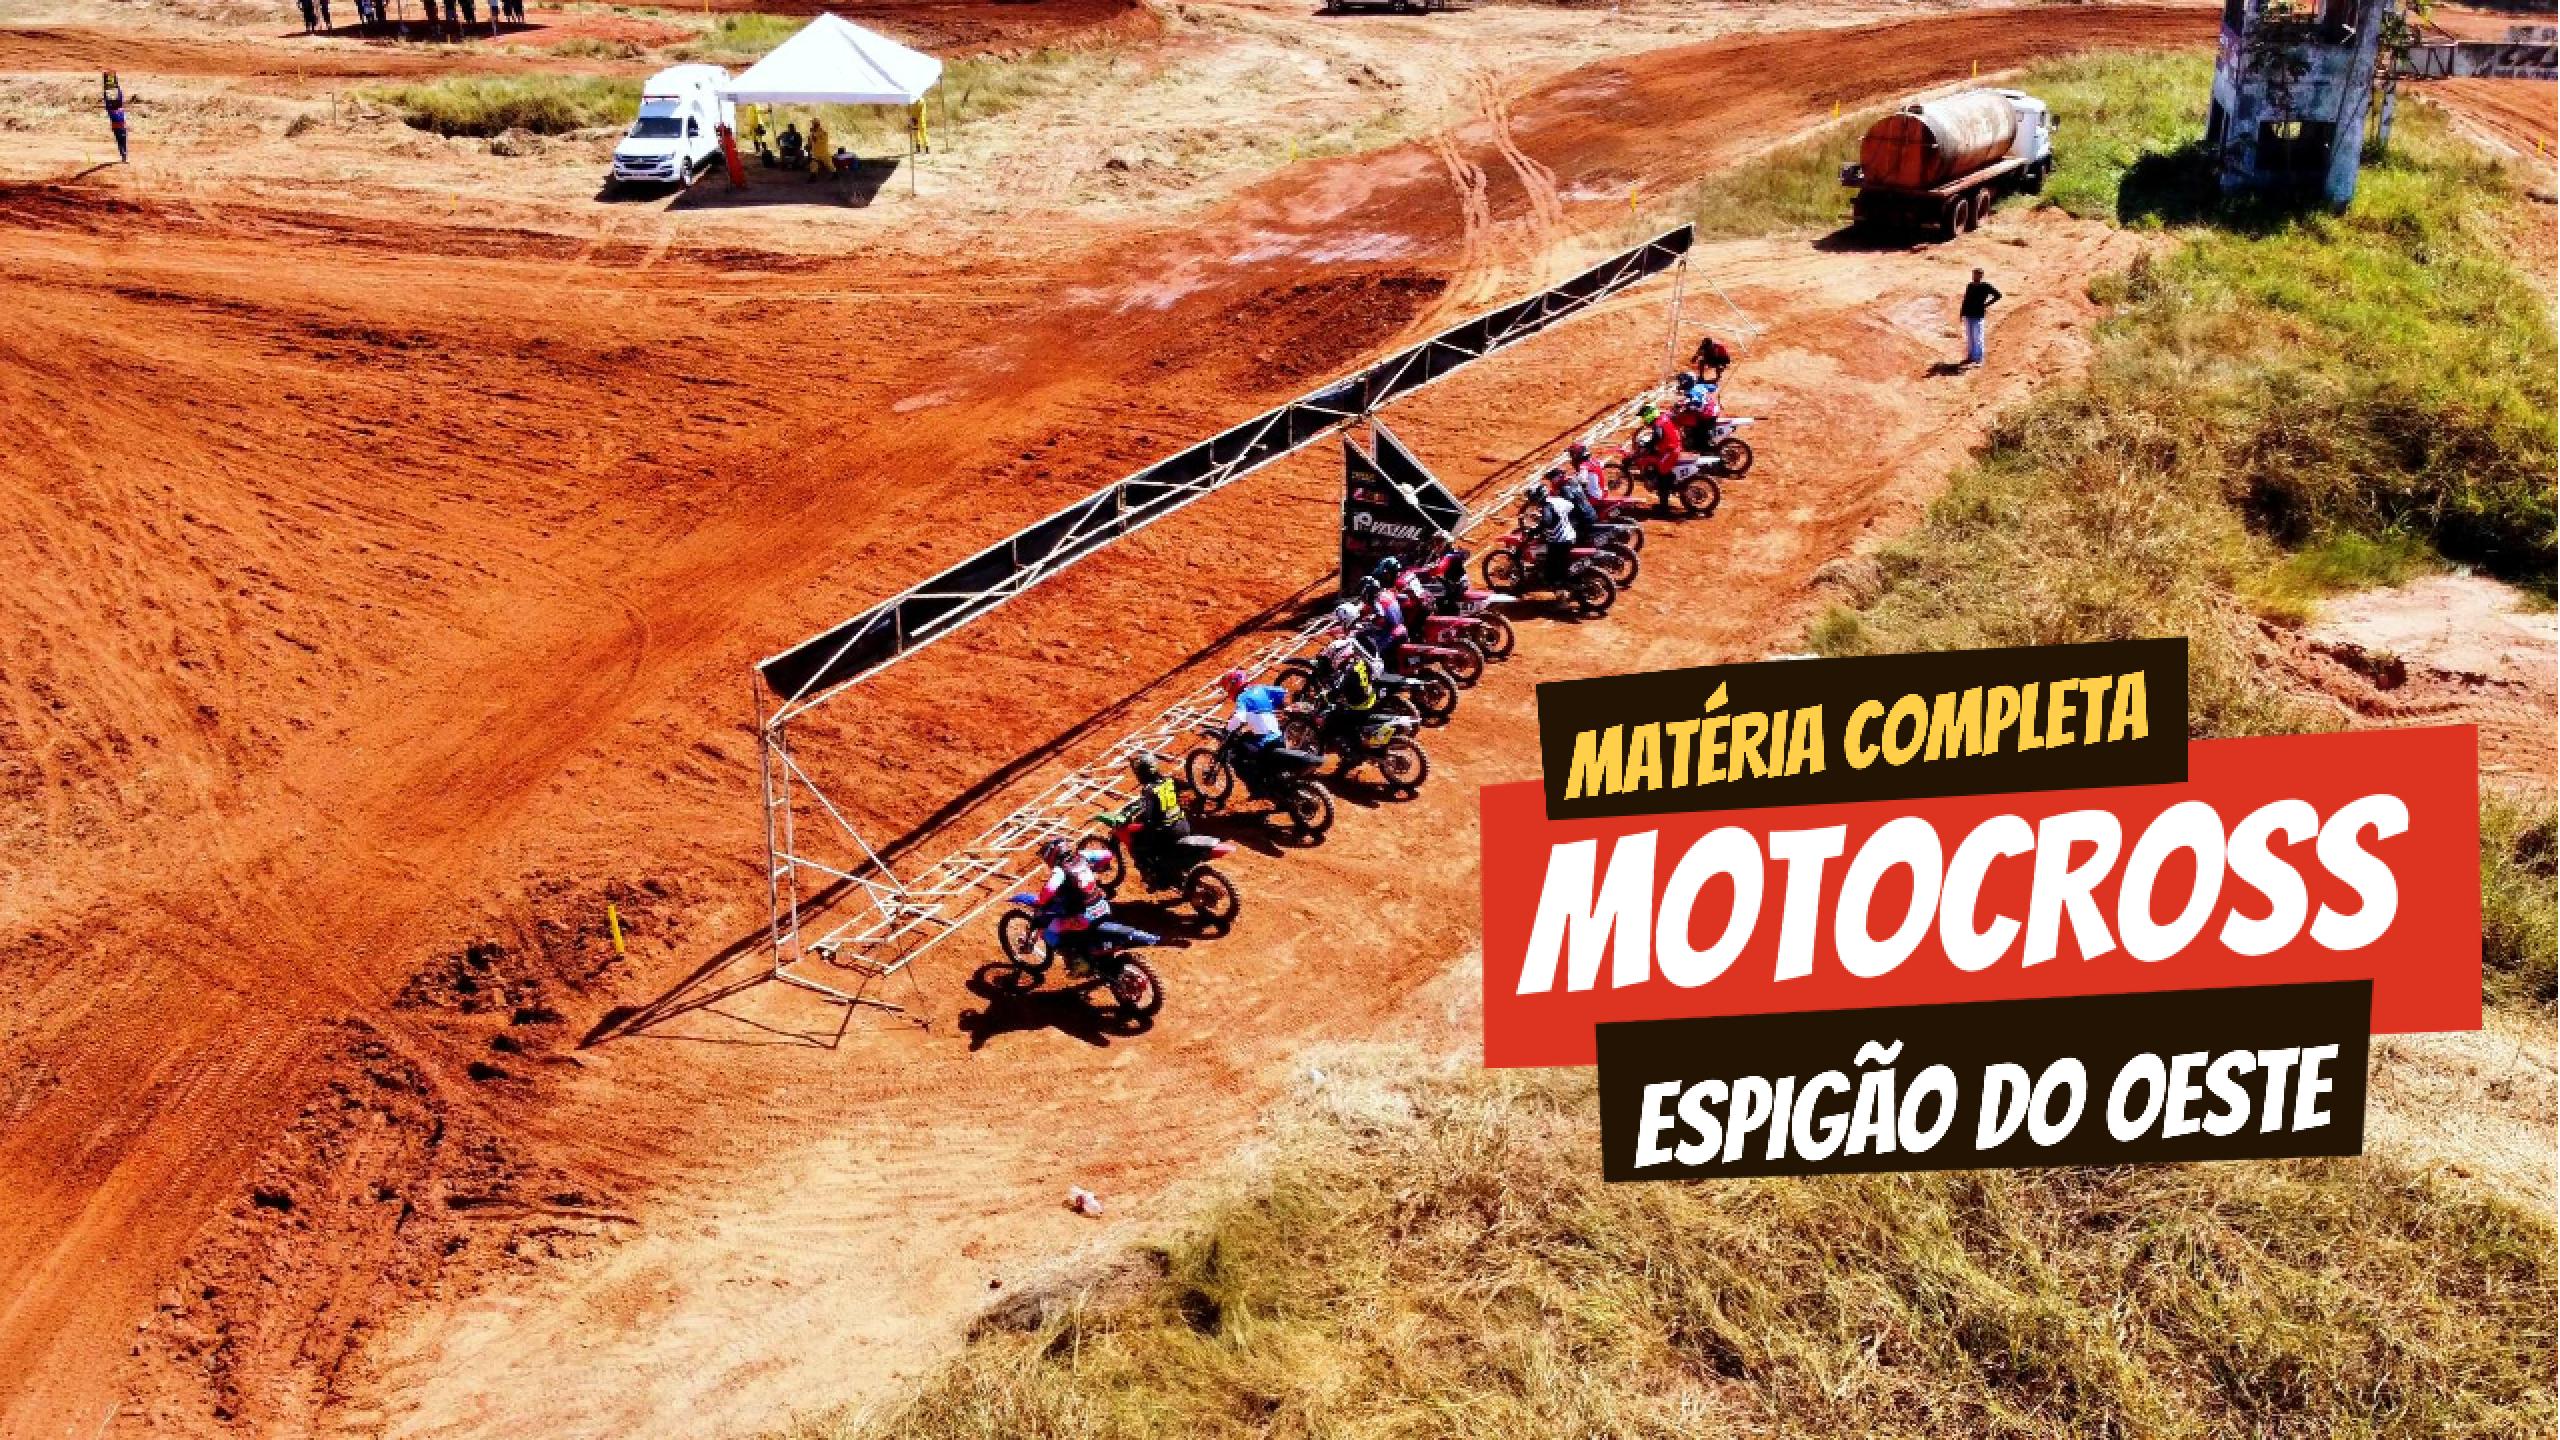 VÍDEO: 4ª Etapa do campeonato Rondoniense de MotoCross em Espigão do Oeste - LIMERO